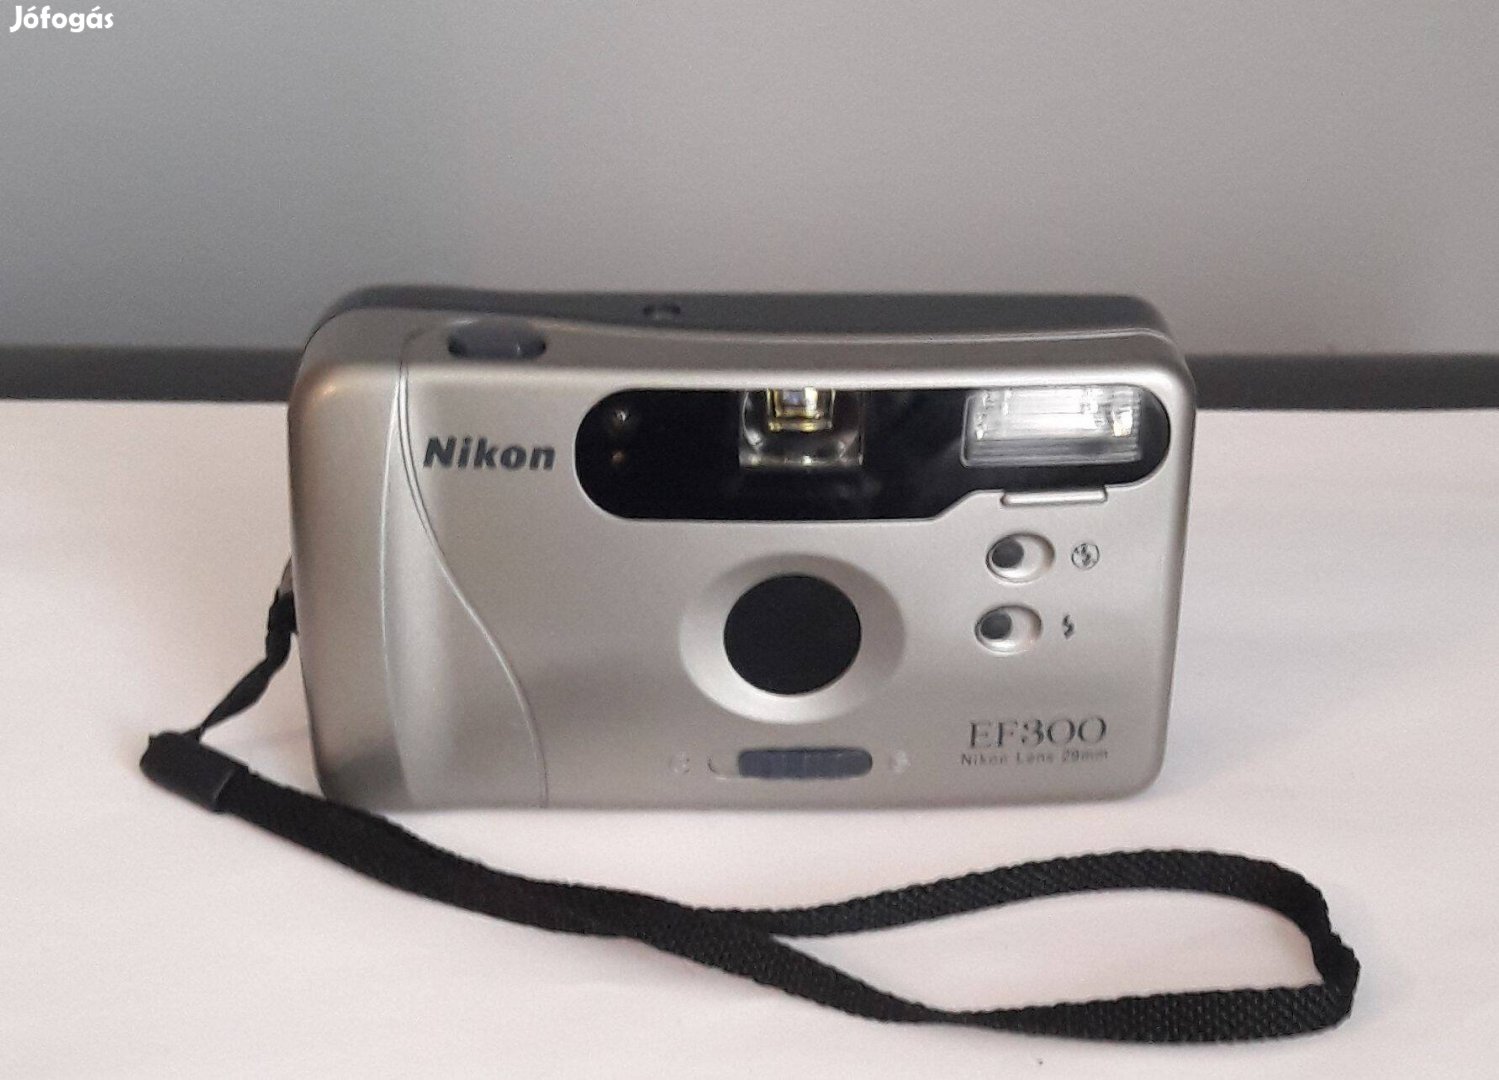 Szép állapotú Nikon EF300 fényképezőgép